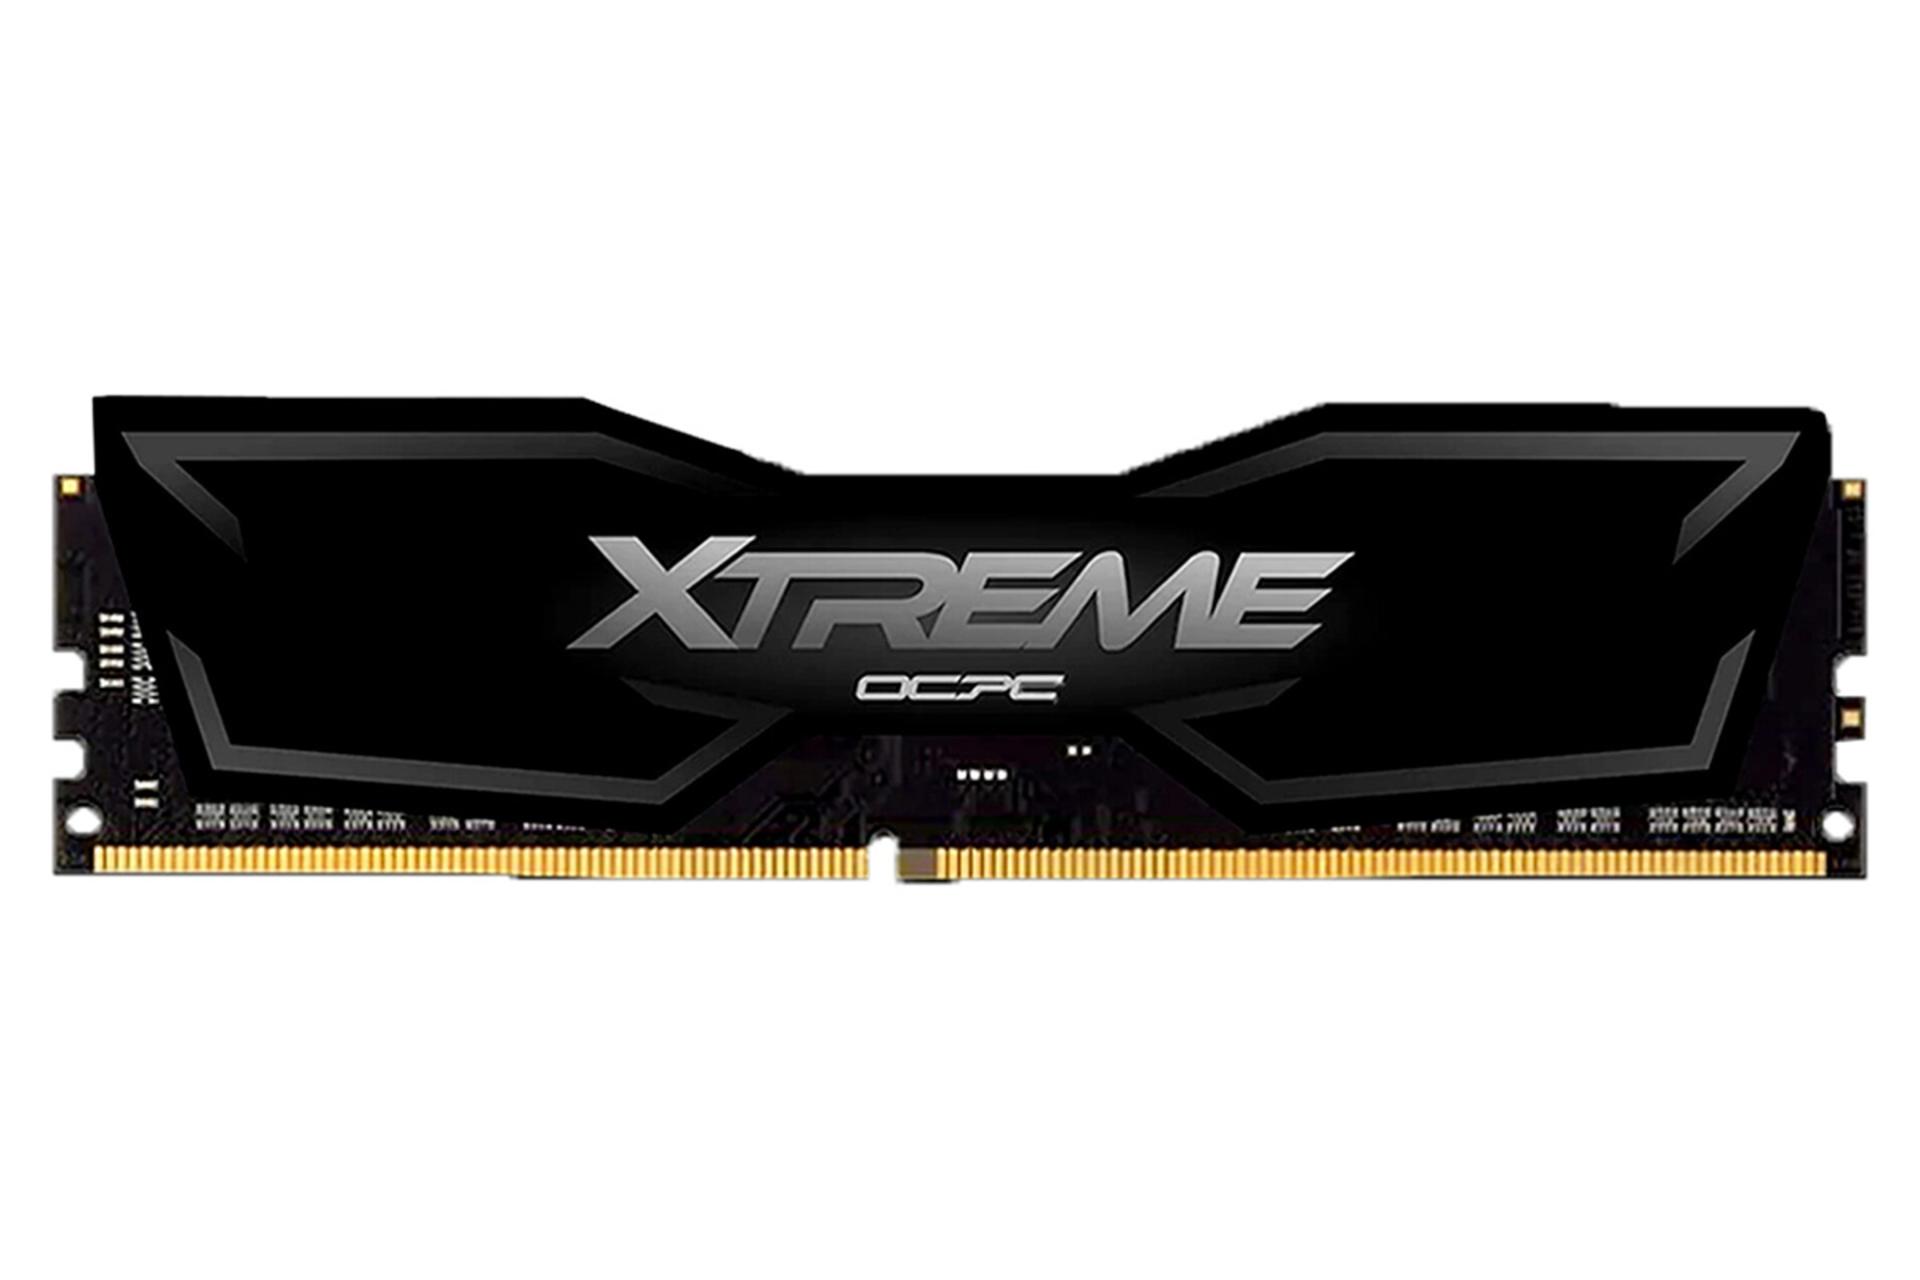 نمای جلوی رم او سی پی سی XTREME ظرفیت 16 گیگابایت از نوع DDR4-3200